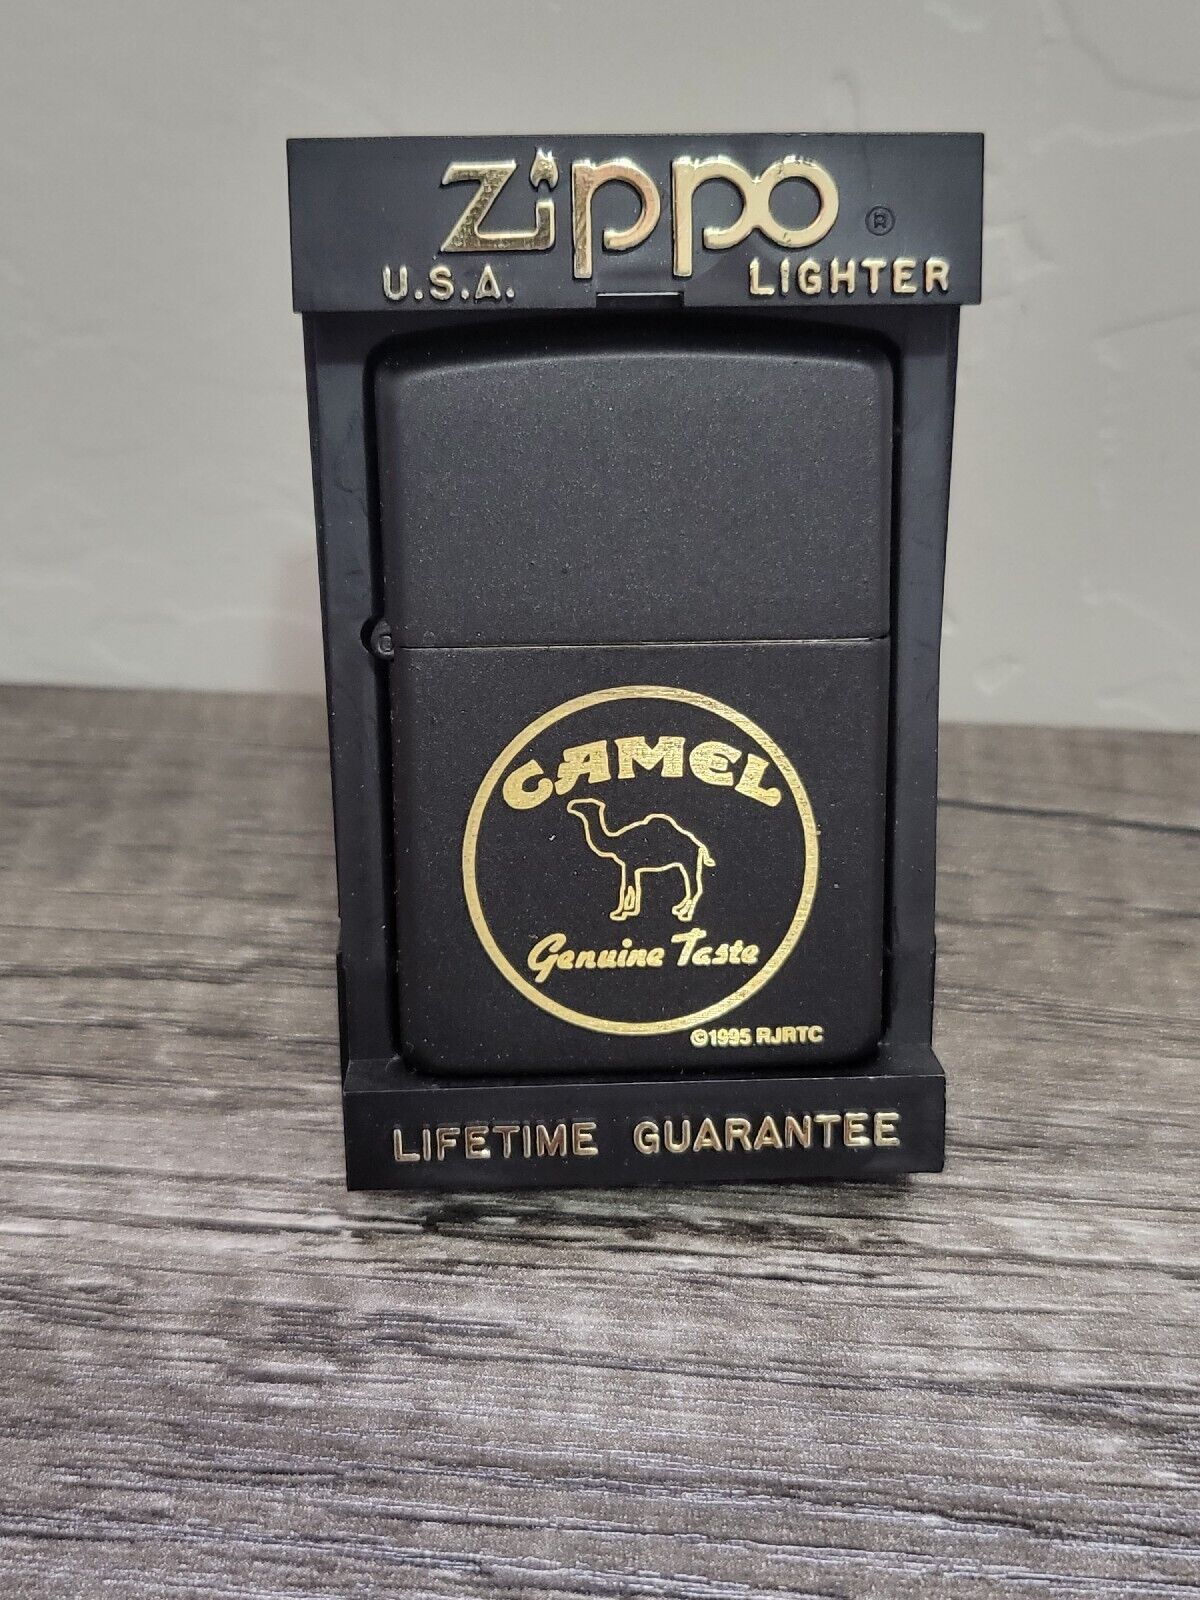 Rare Retired  Genuine Taste Zippo Lighter   AG